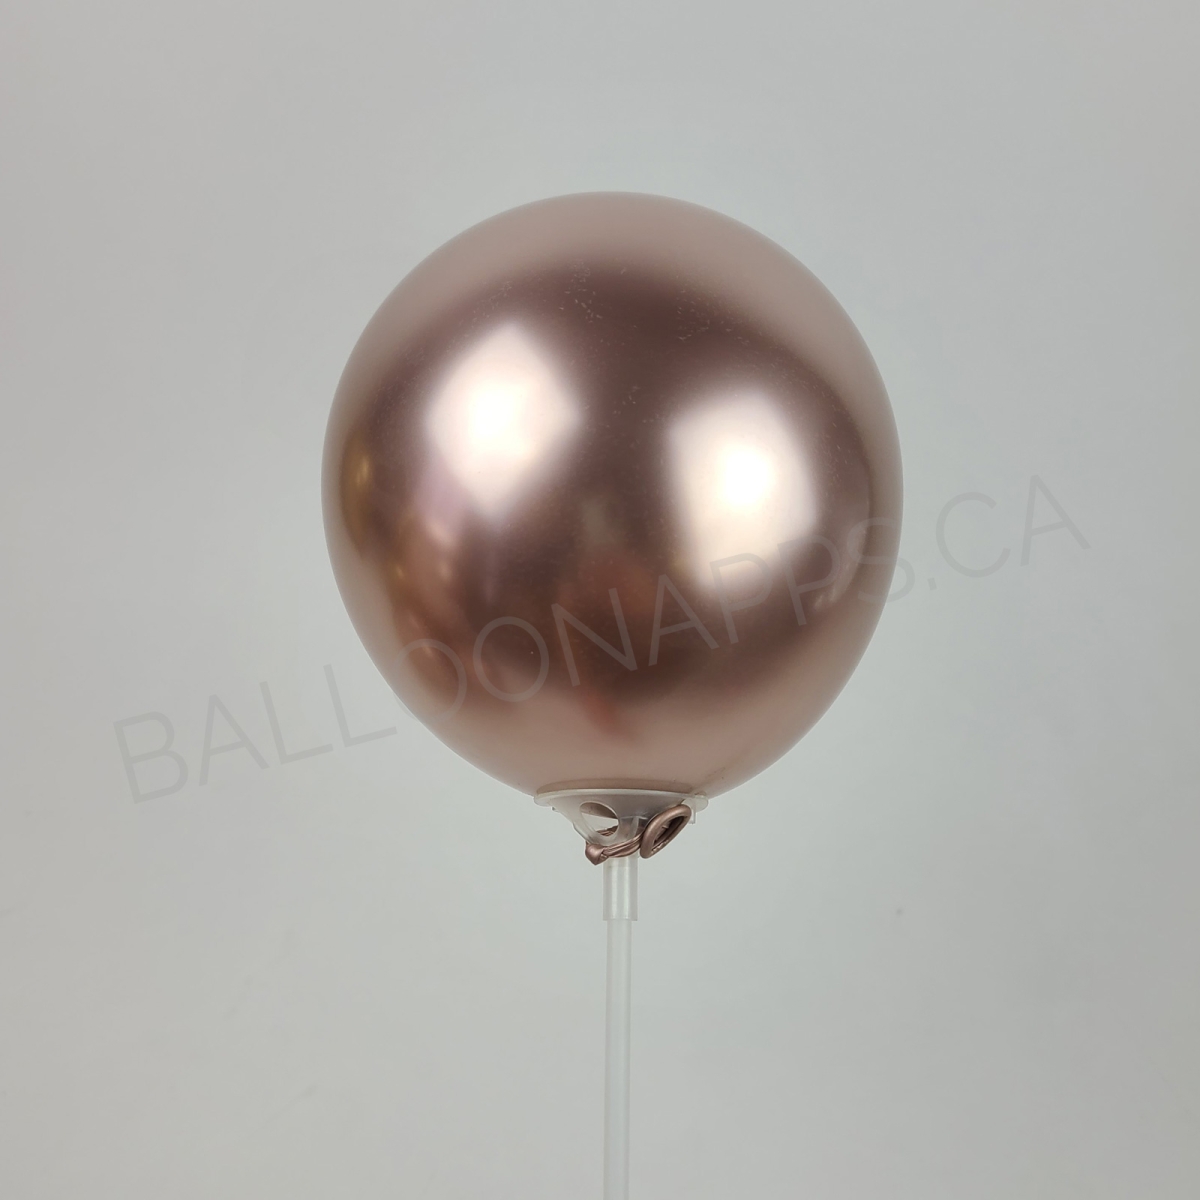 ECONO (100) 5" Econo-Luxe Rosé balloons